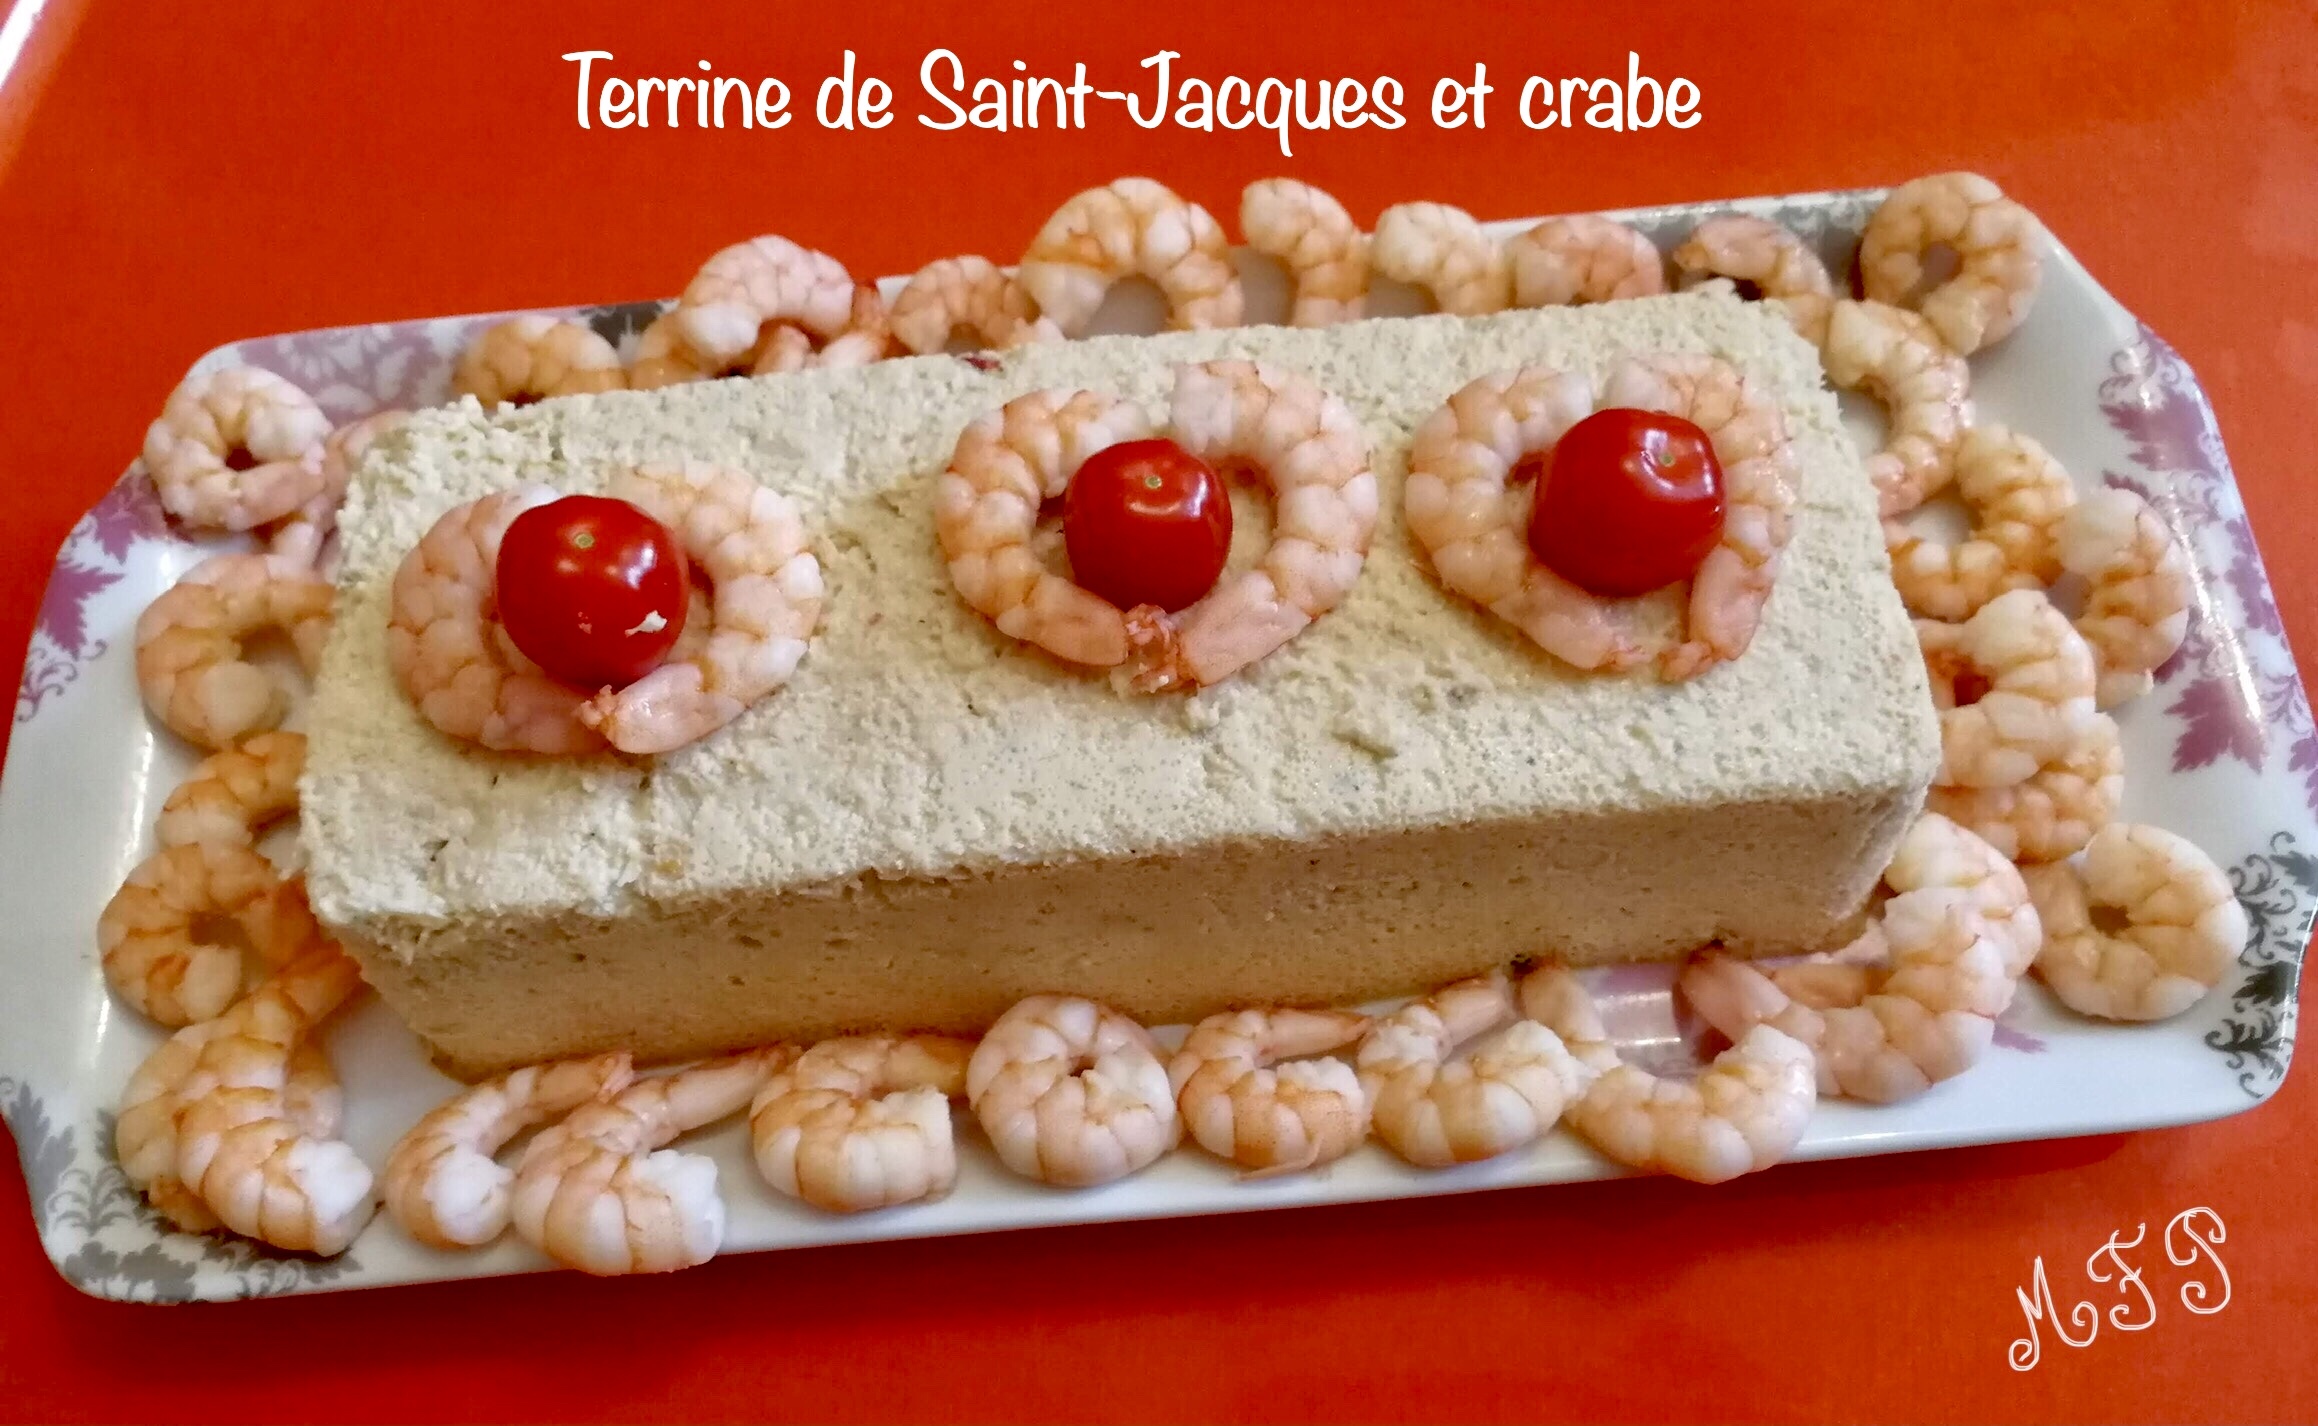 Terrine de Saint-Jacques et crabe